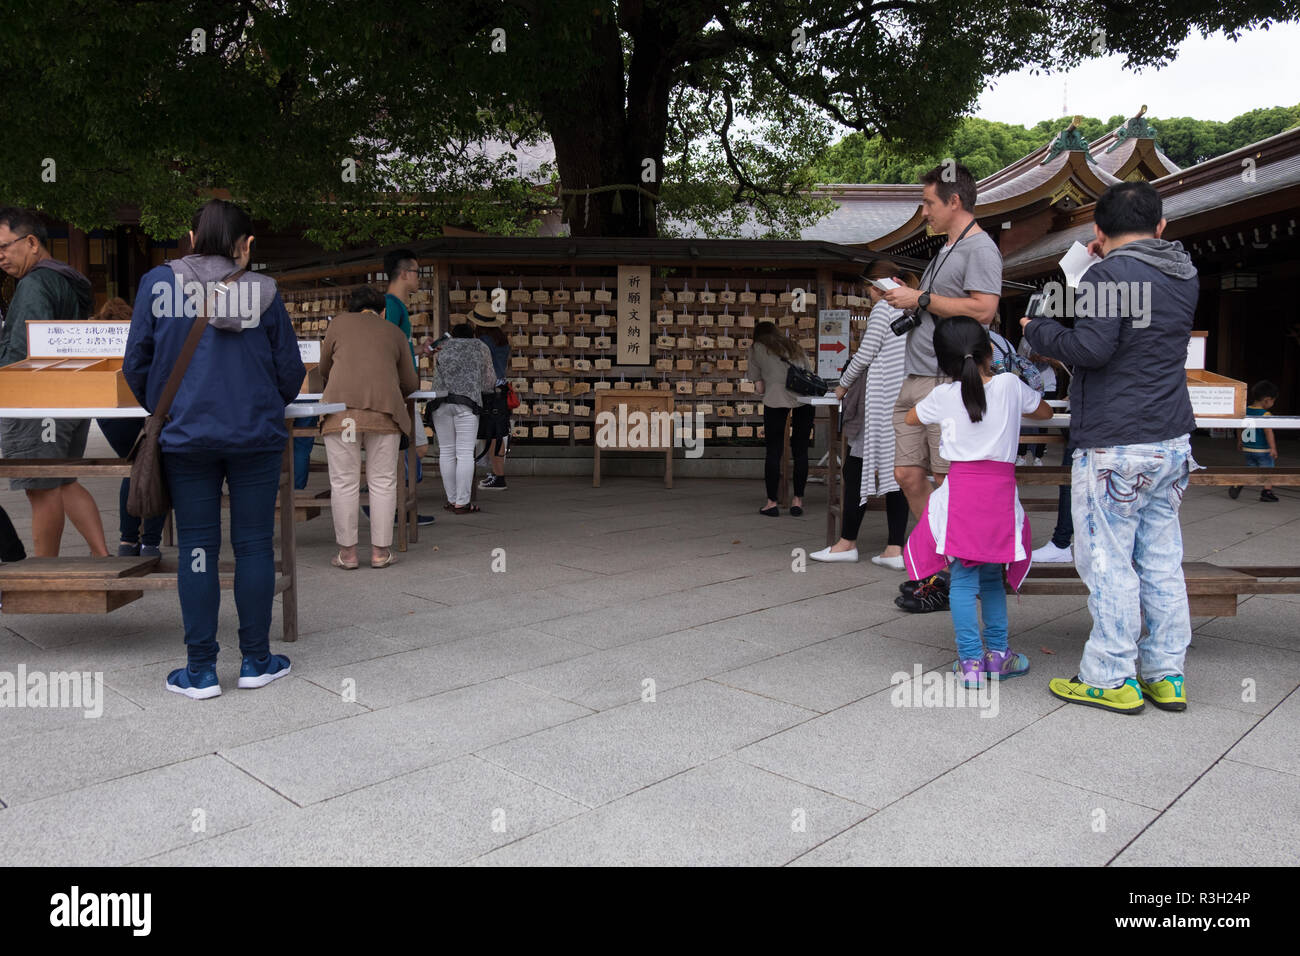 Emas, oder Gebet Boards, geschrieben und Orte von anbetern an Mejii Jingo in Tokio, Japan. Stockfoto